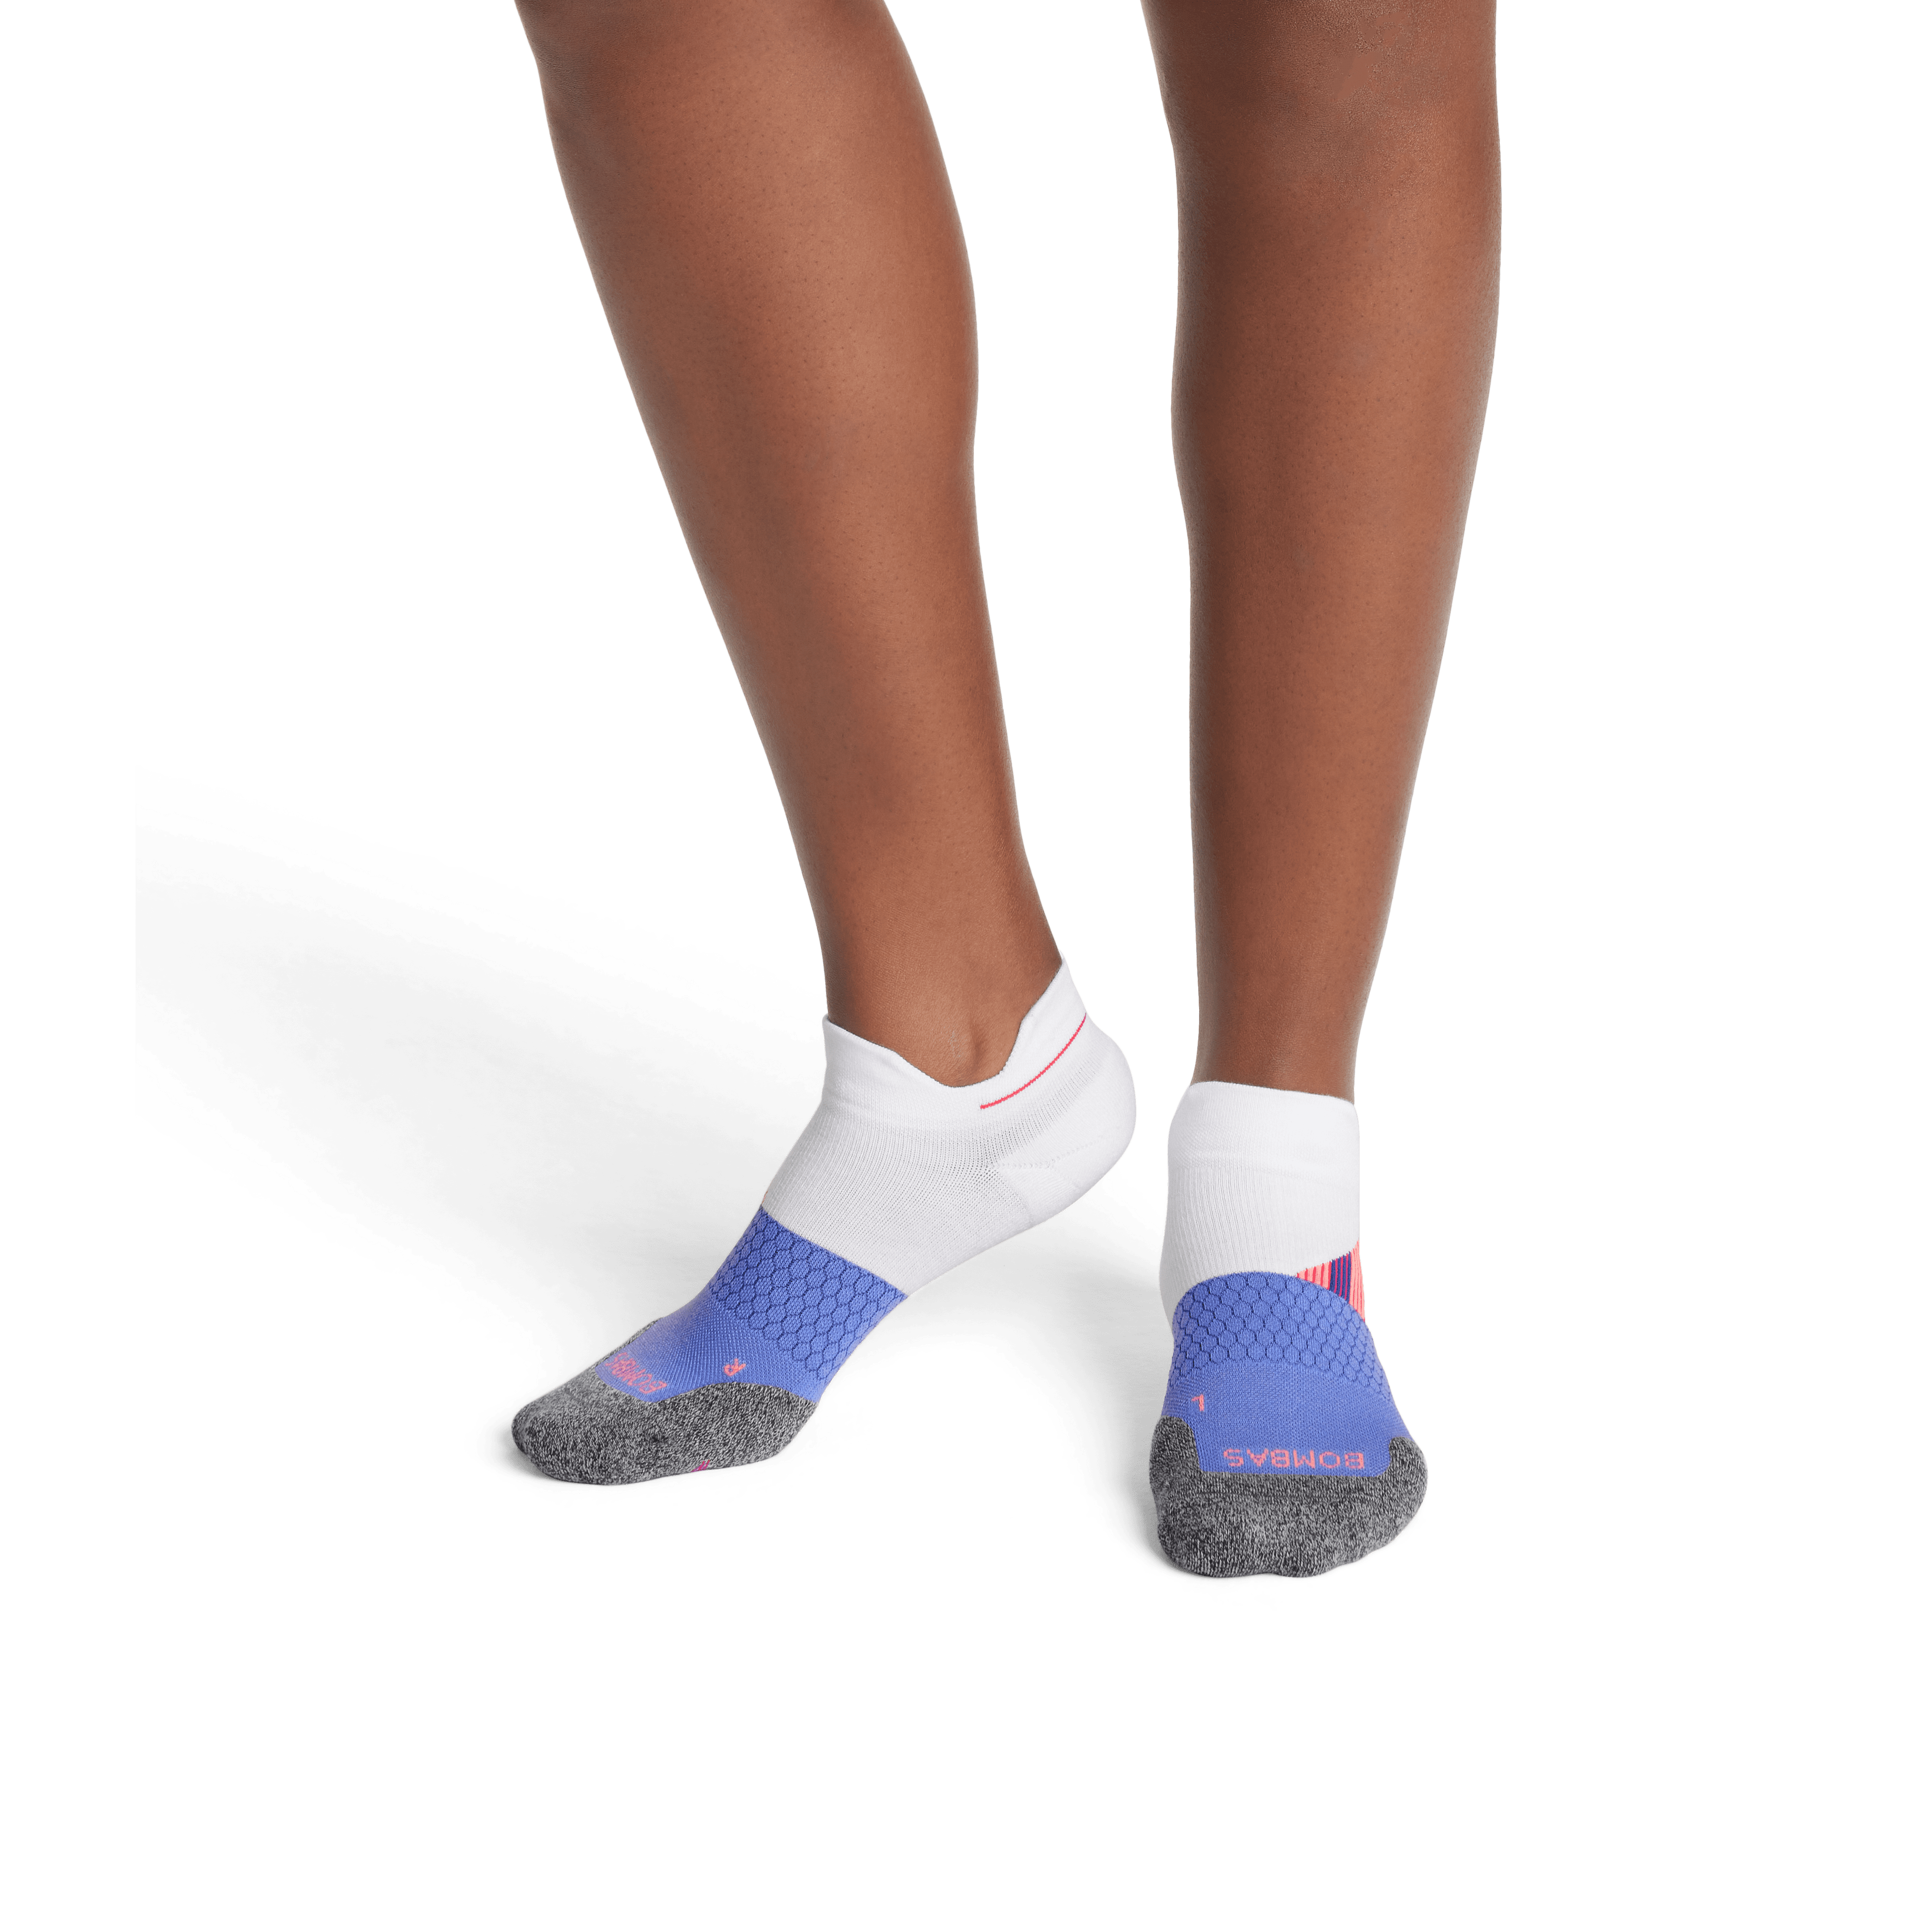 Bombas Women's Socks